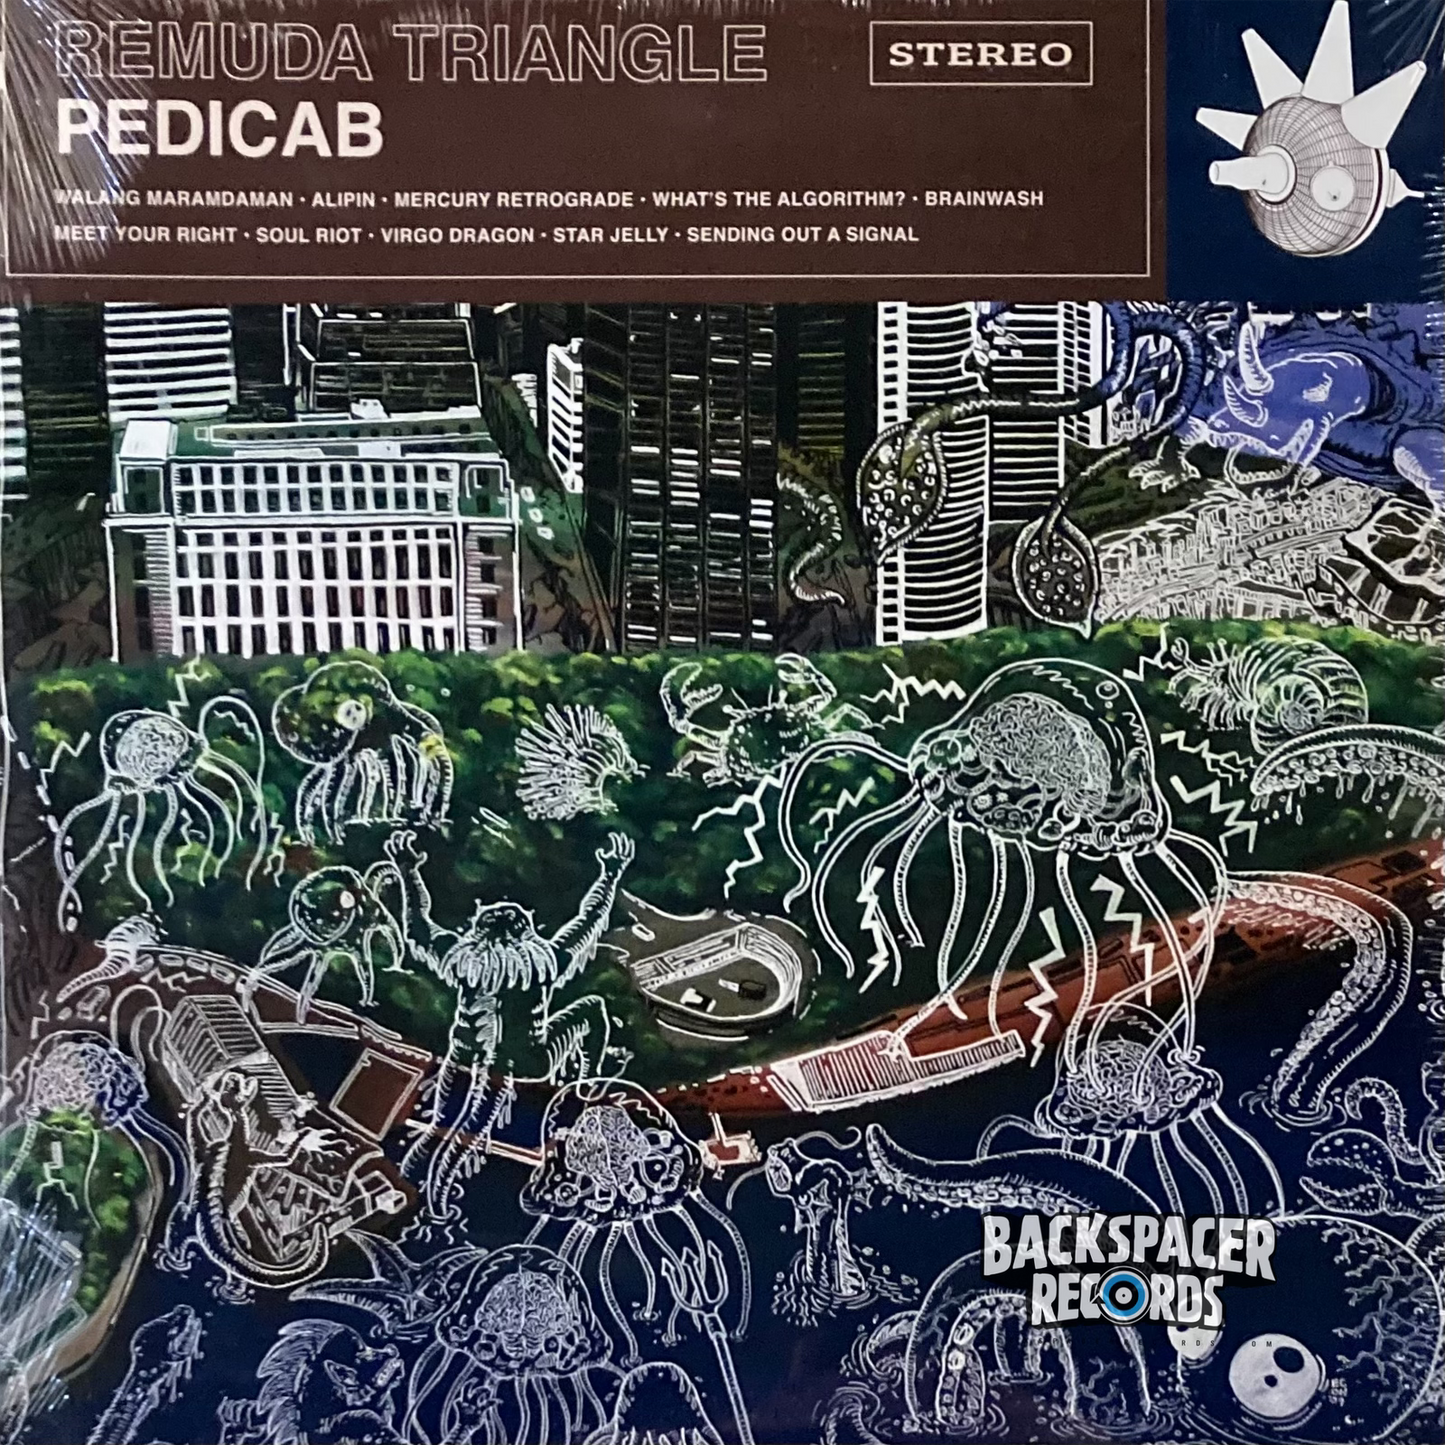 Pedicab - Remuda Triangle LP (Sealed)